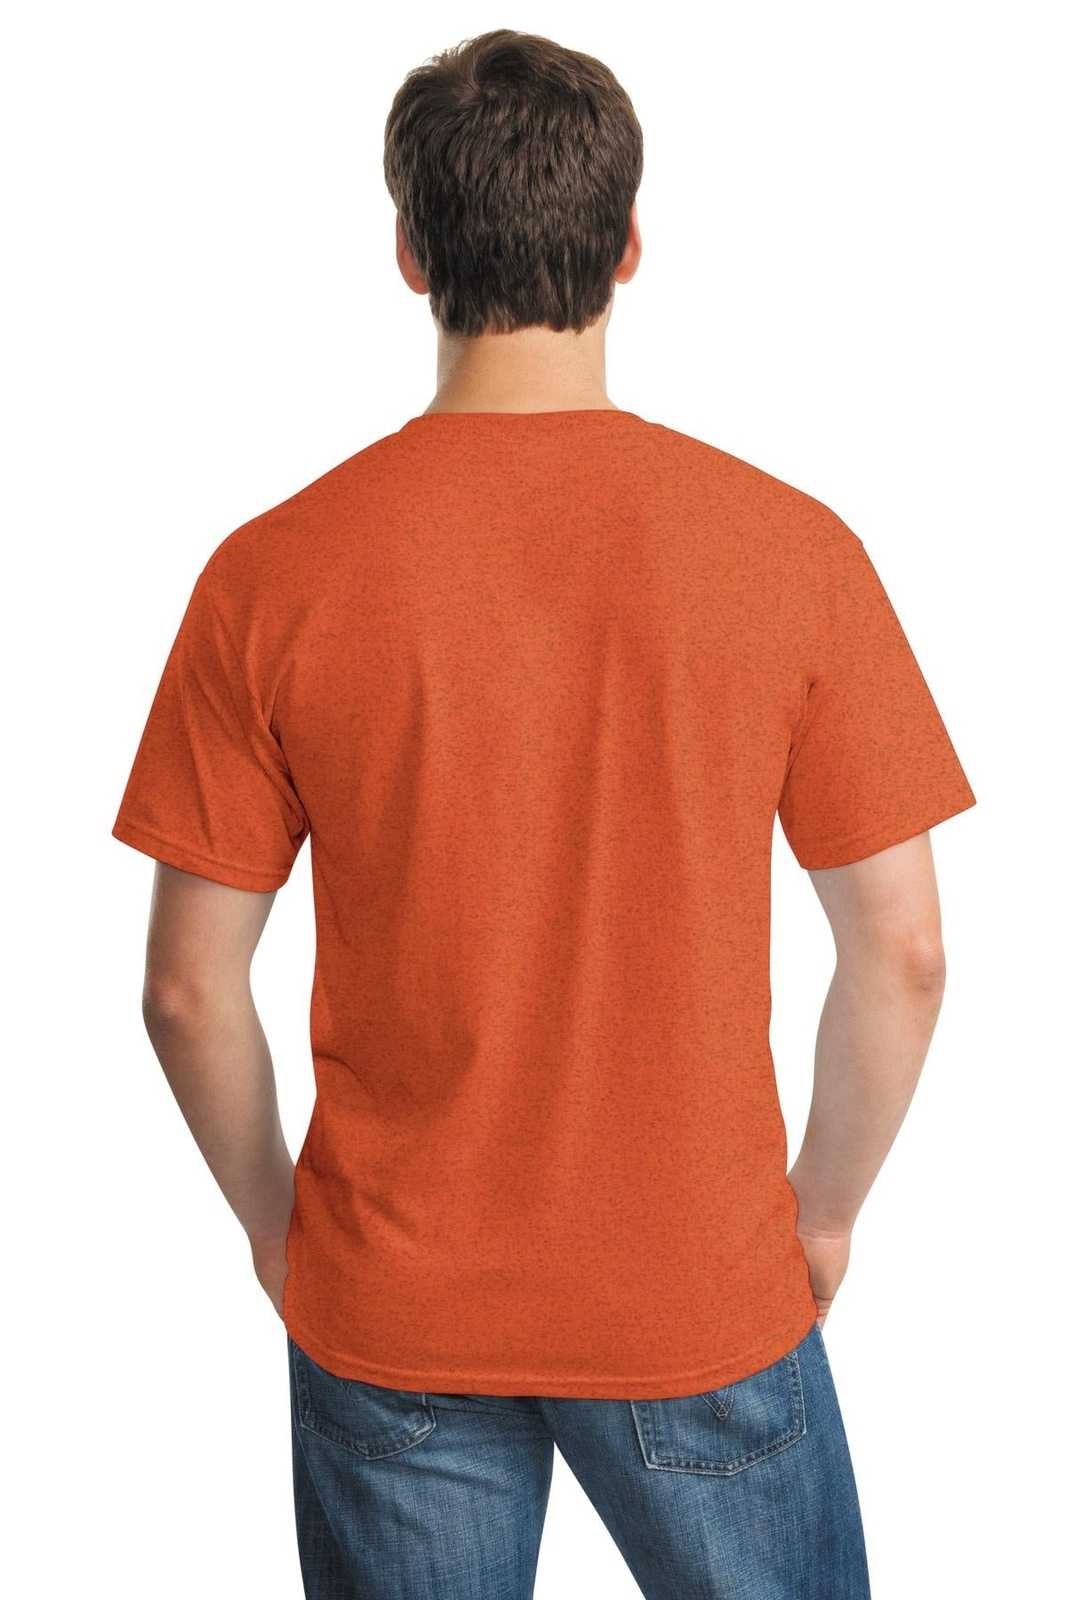 Gildan 5000 Heavy Cotton 100% Cotton T-Shirt - Antique Orange - HIT a Double